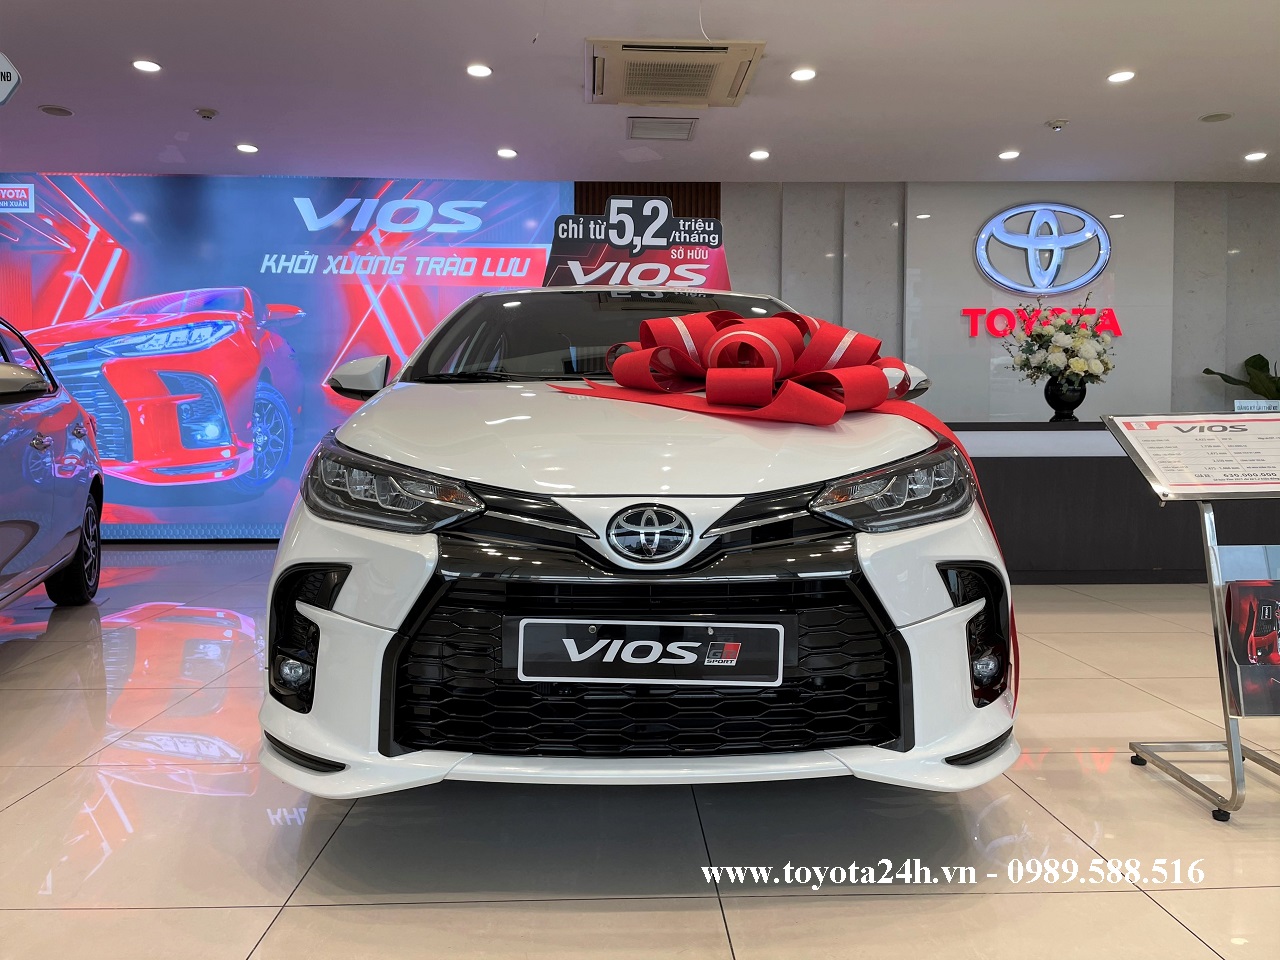 Toyota Vios 1.5GR-S 2022 Màu Trắng Ngọc Trai | Bảng Giá Xe | Hình Ảnh | Thông Số Lăn Bánh